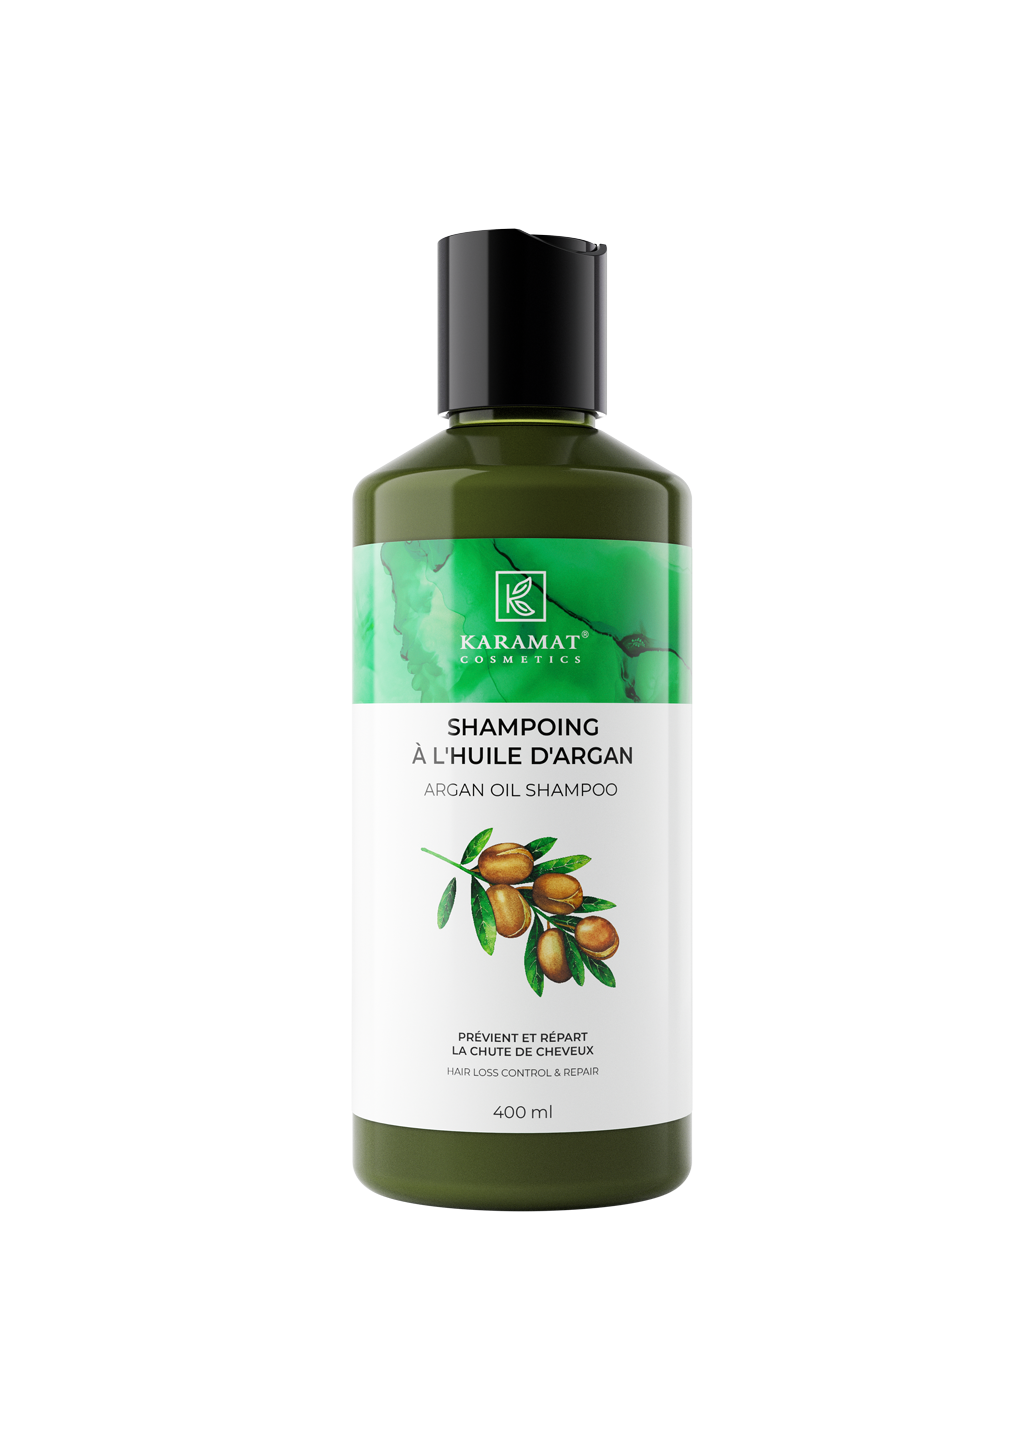 shampooing-a-l-huile-d-argan-karamat-cosmetics-400-ml-controle-et-freine-la-chute-de-cheveux